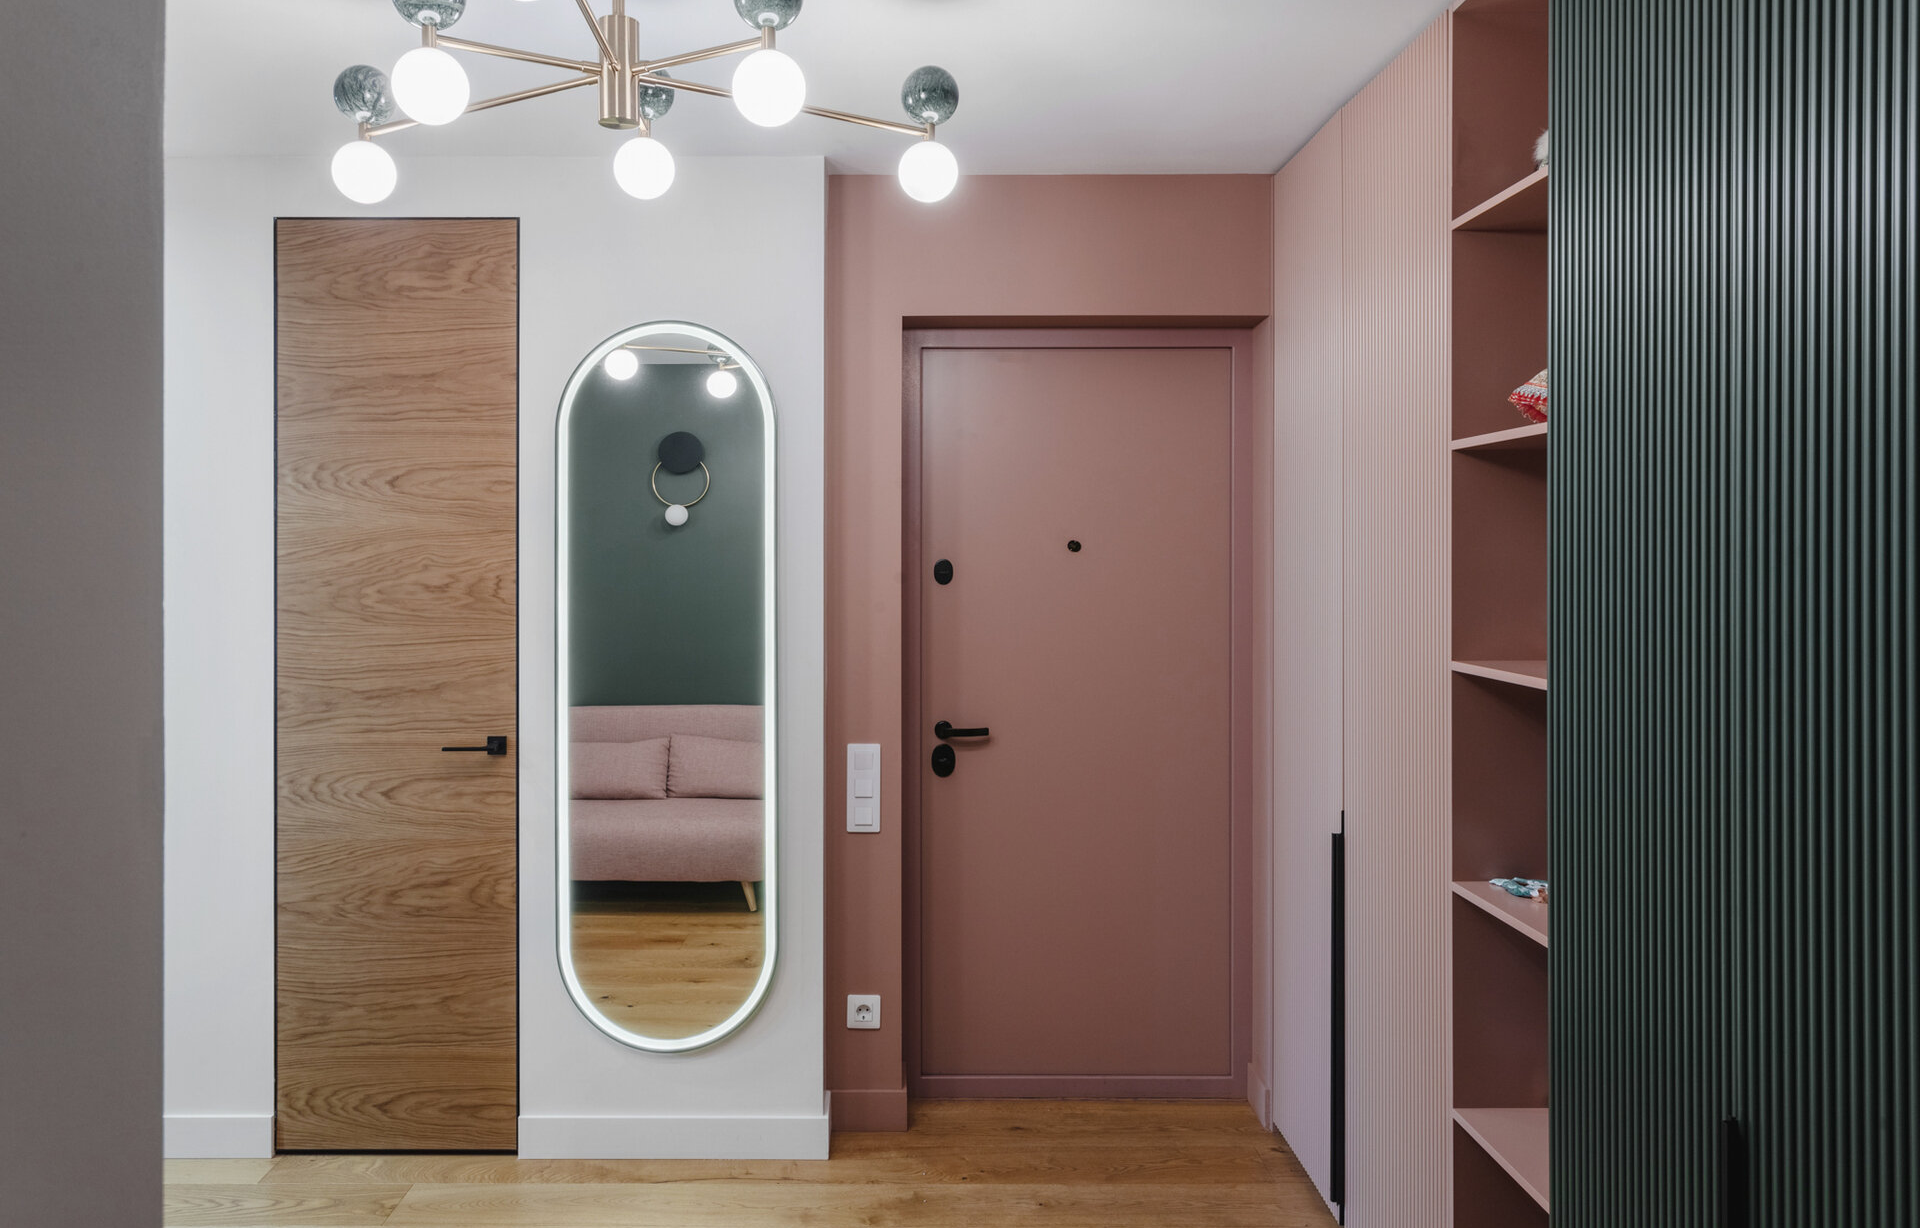 Ремонт коридора в квартире: 35 красивых фото с дизайнерскими идеями